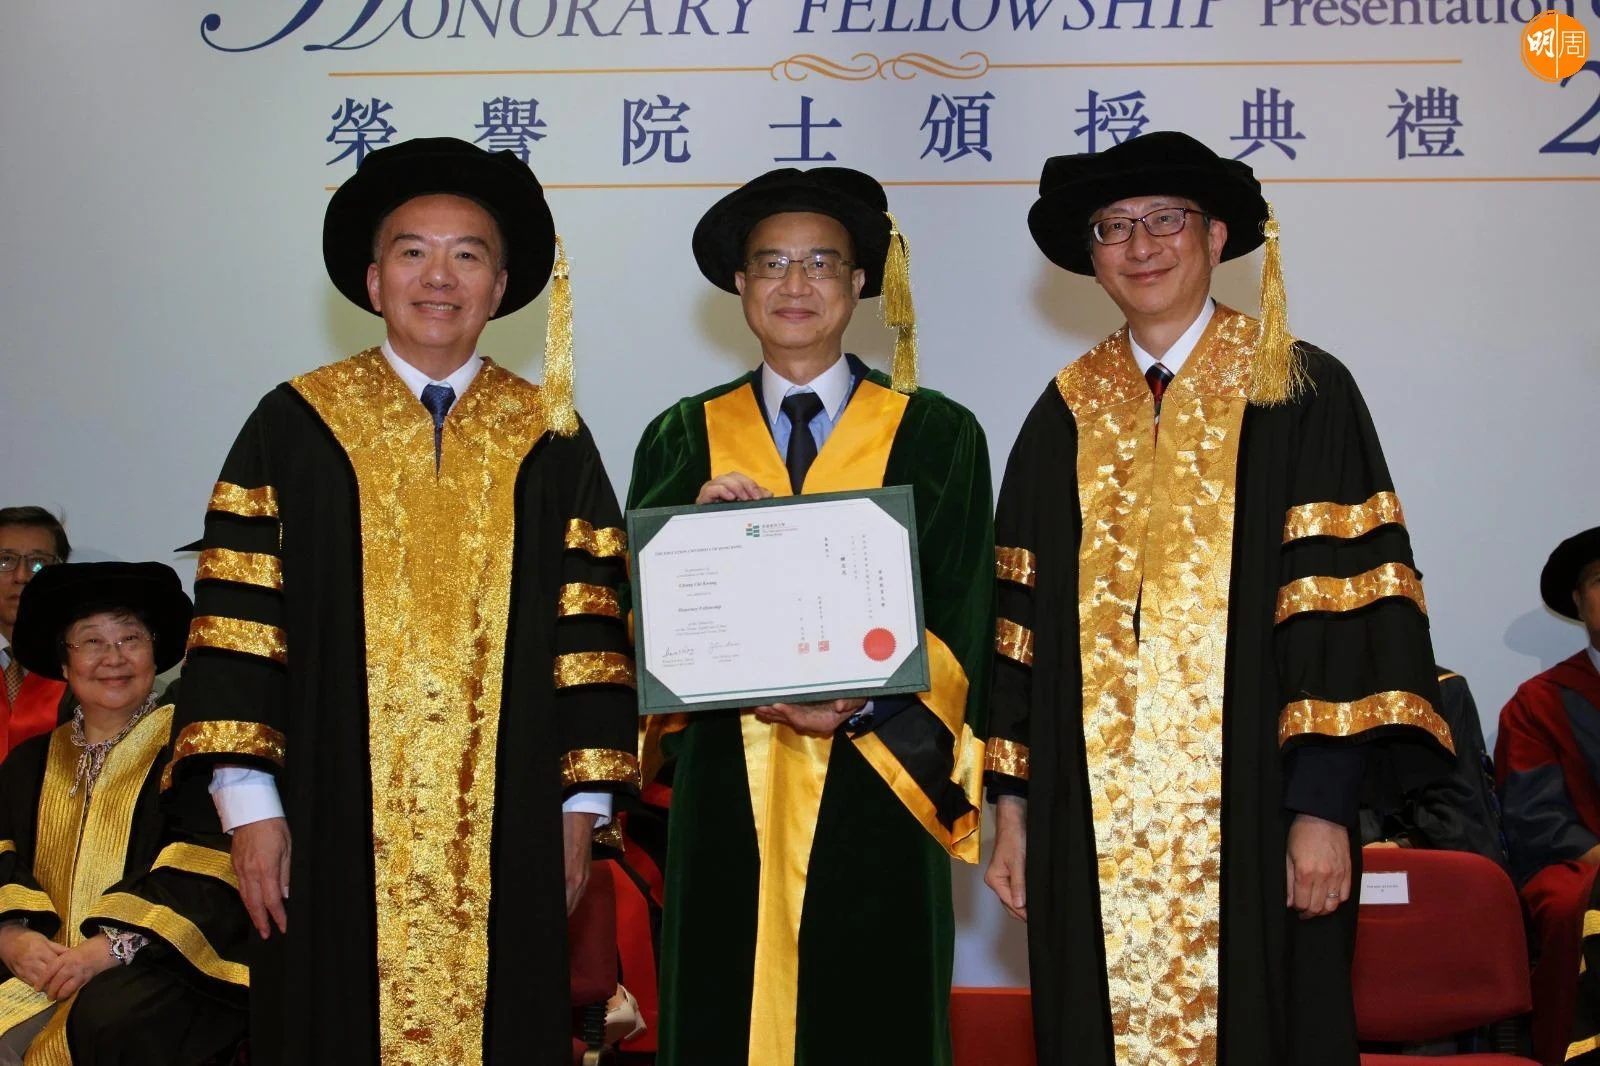 鍾志光獲教育大學頒授榮譽院士銜